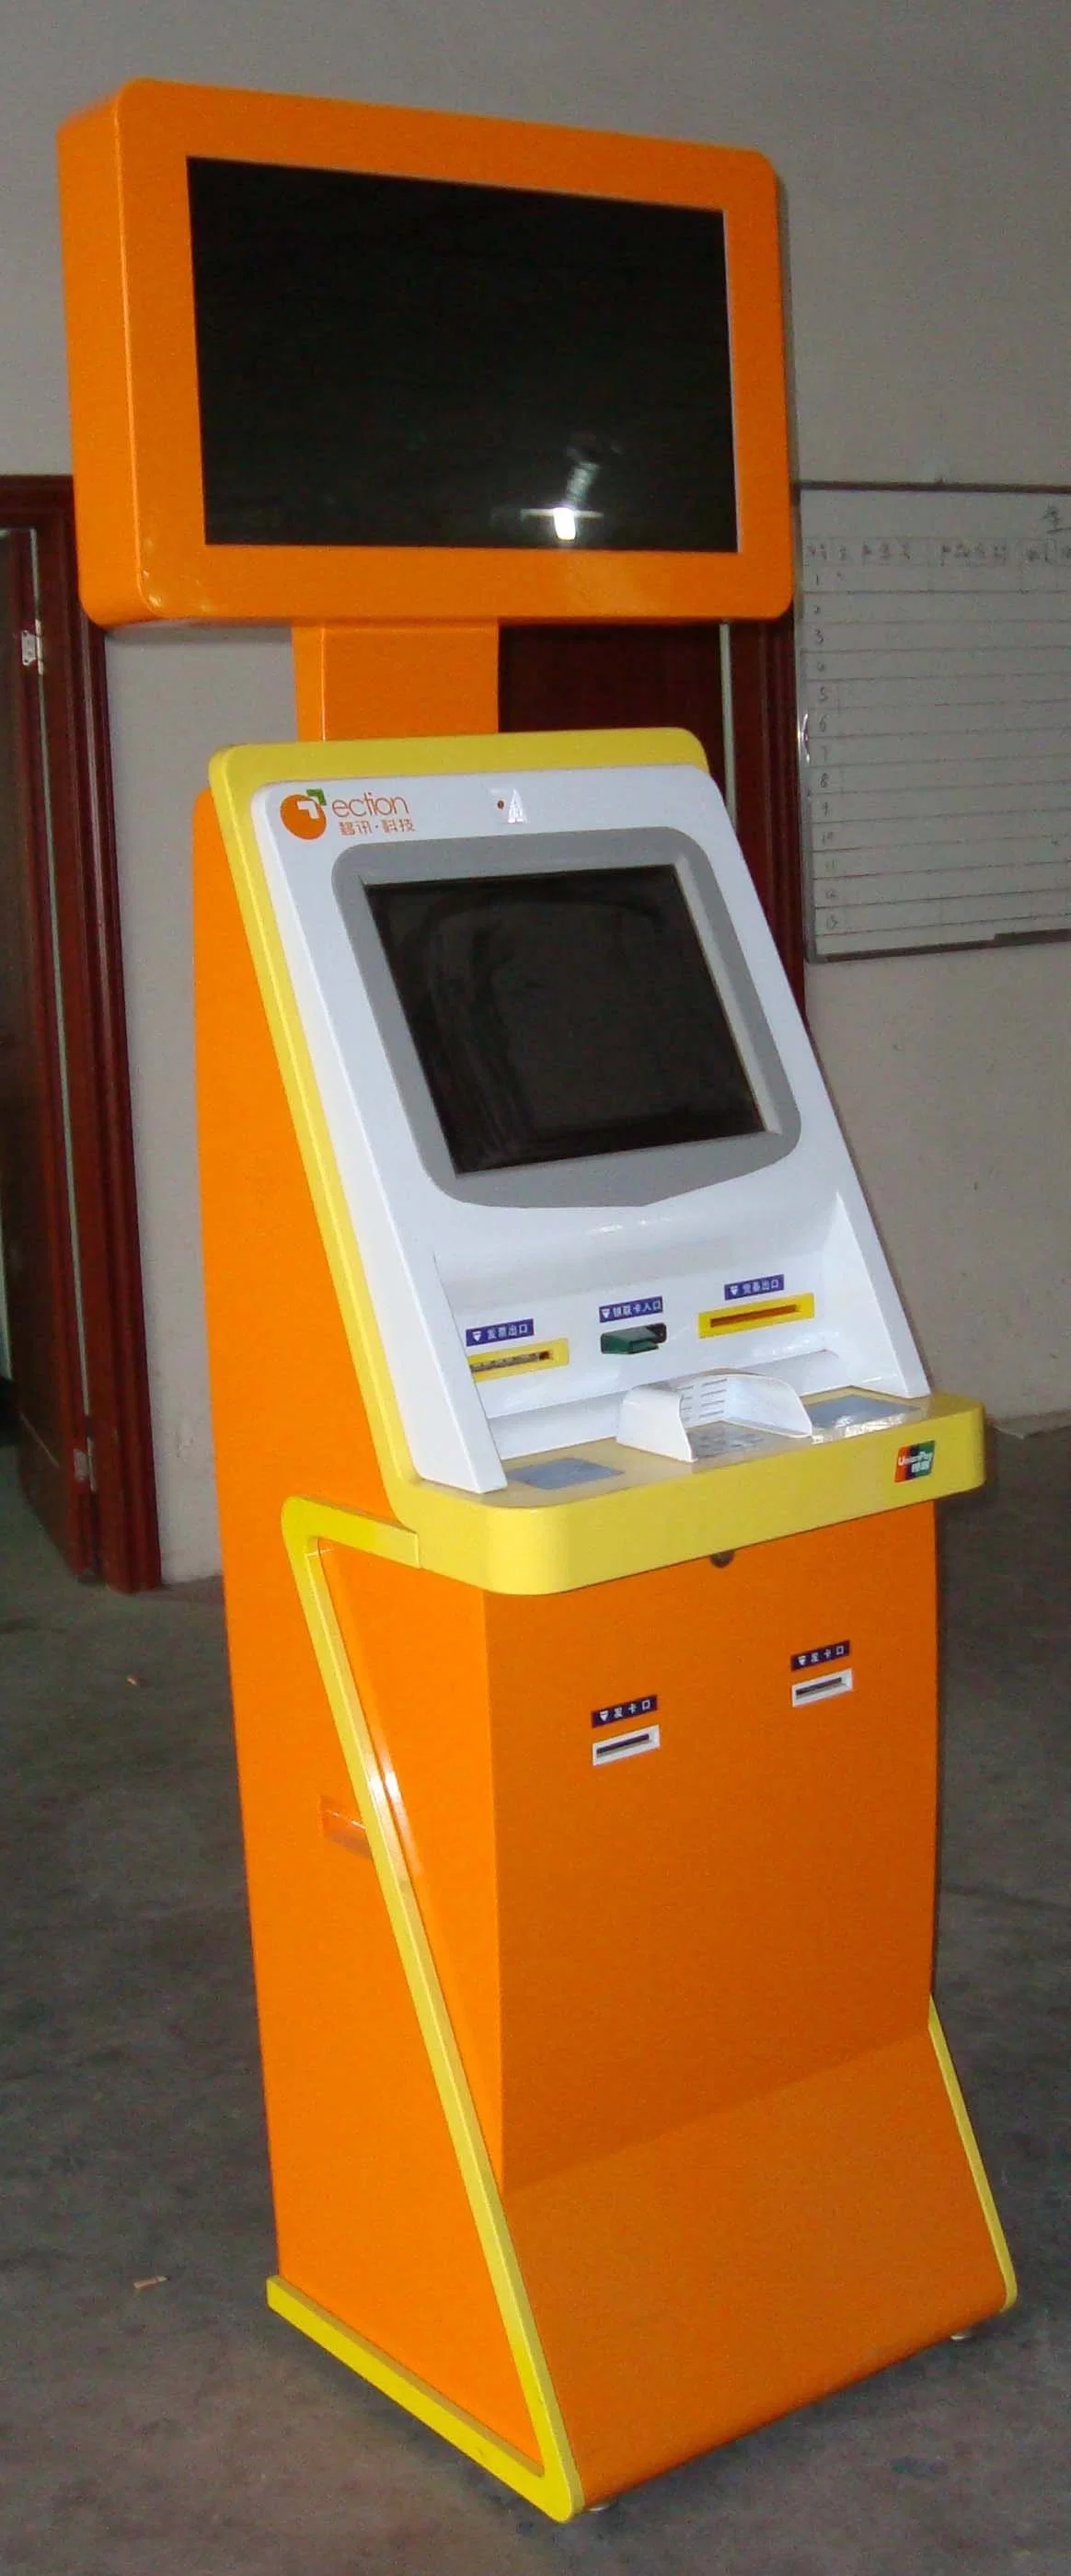 Nutzung Im Innenbereich Kiosk Mit Selbstzahlung/Geldautomat/Kiosk Mit Selbstzahlung Maschine